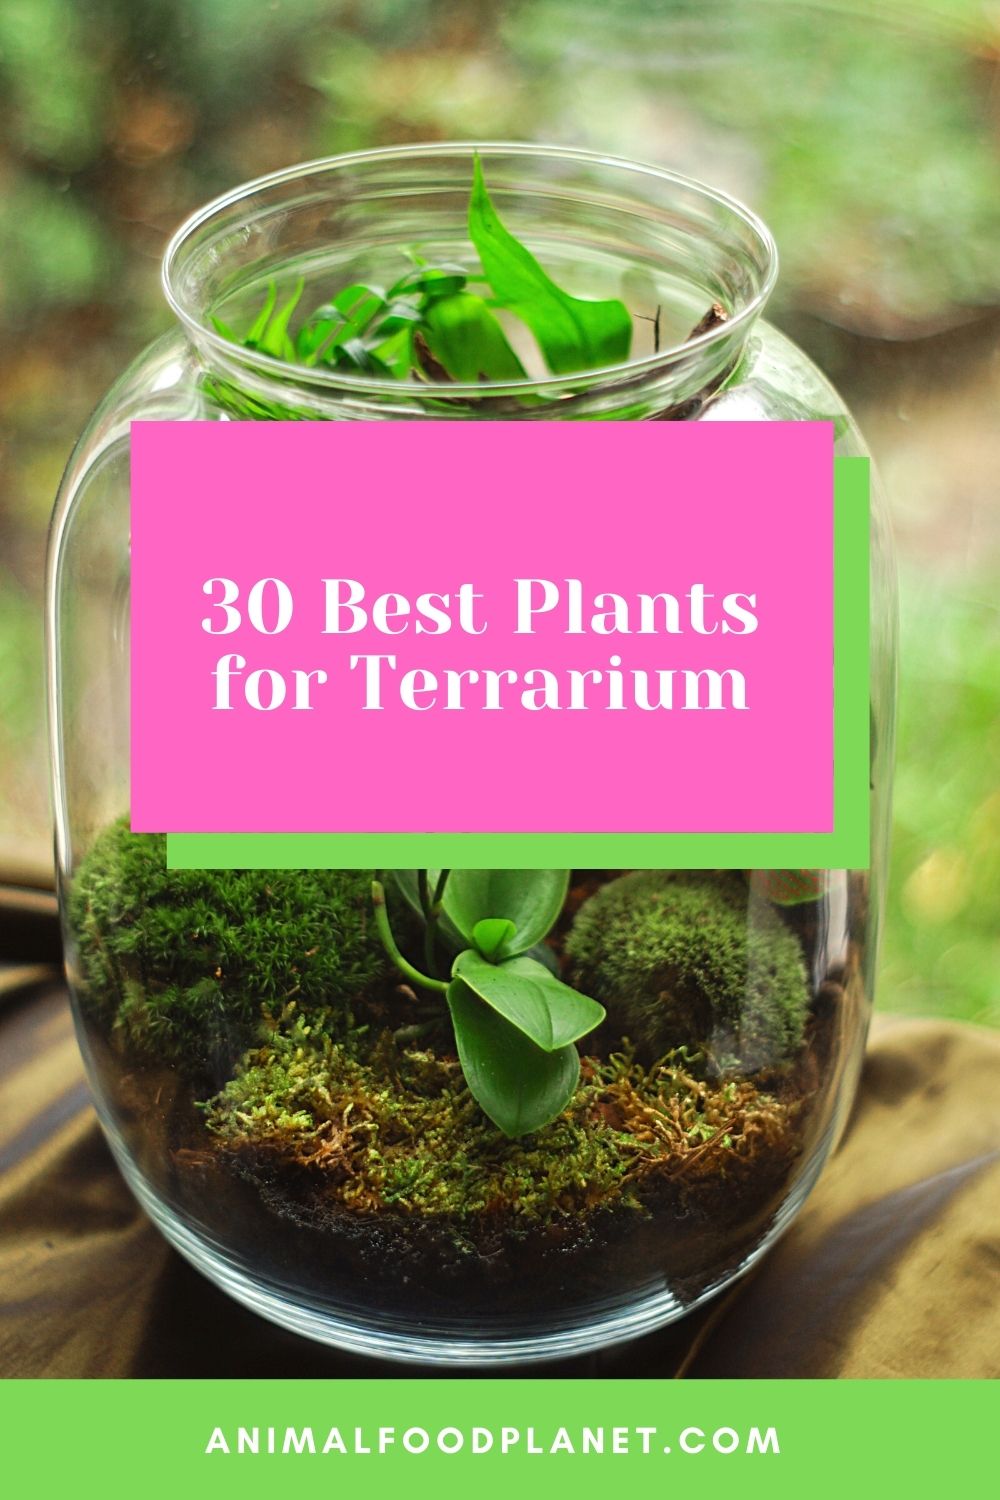 30 Best Plants for Terrarium